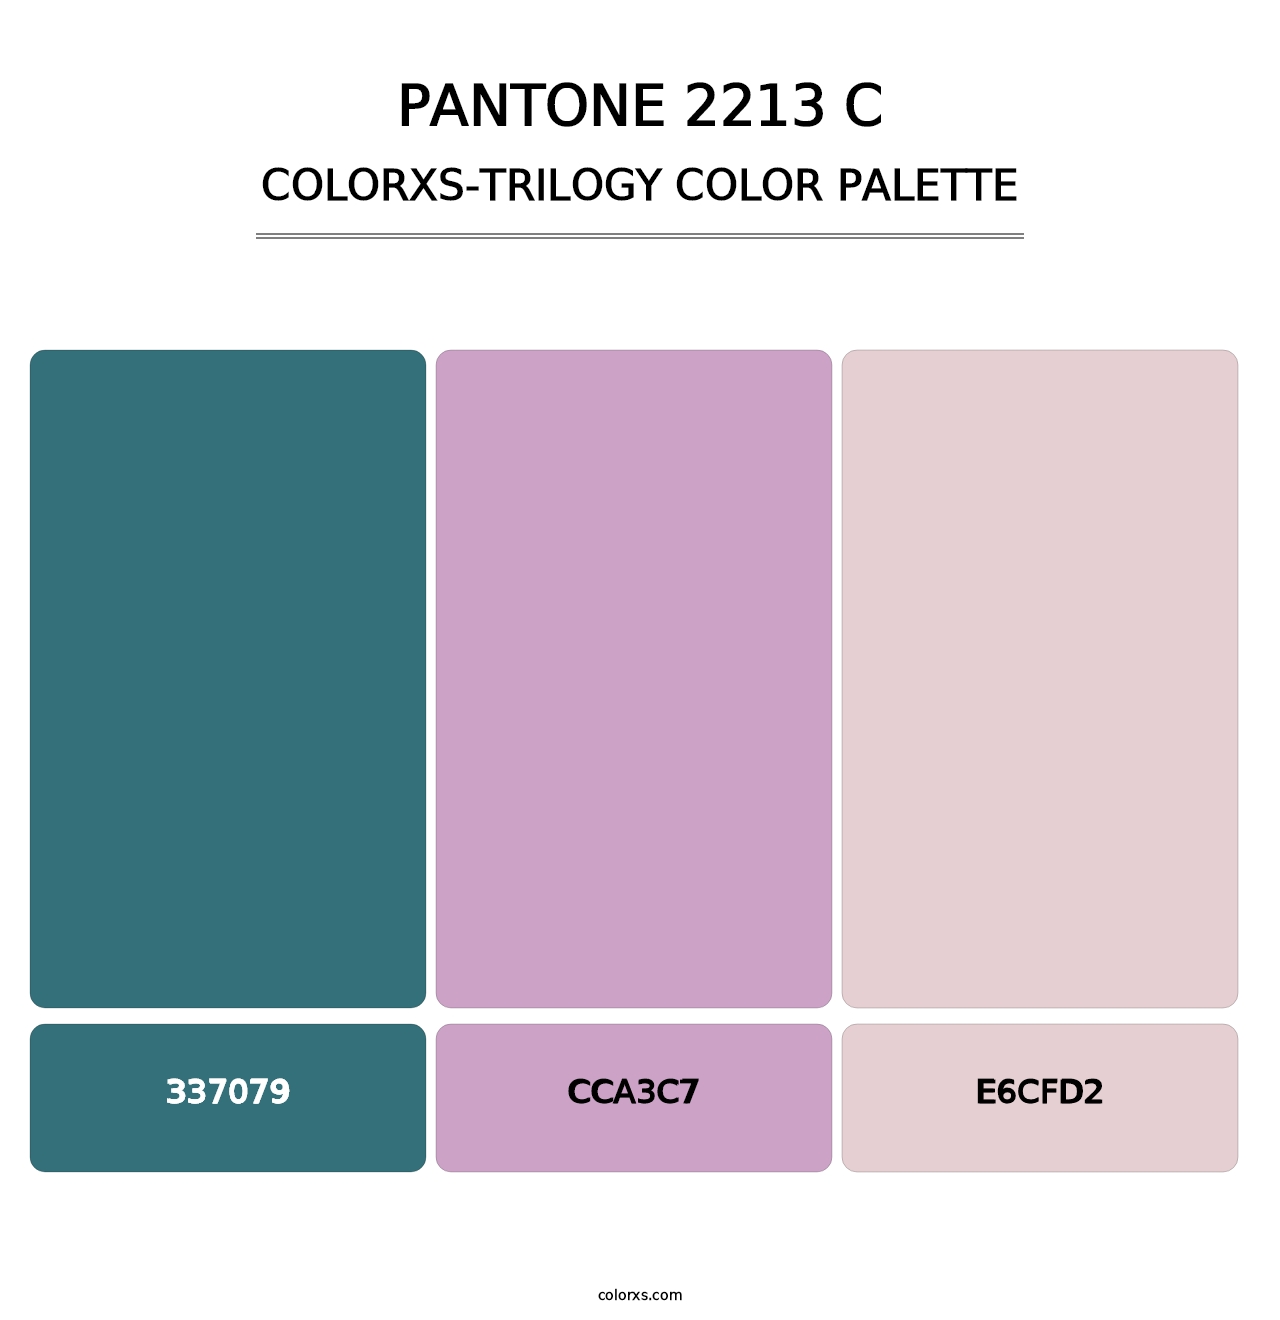 PANTONE 2213 C - Colorxs Trilogy Palette